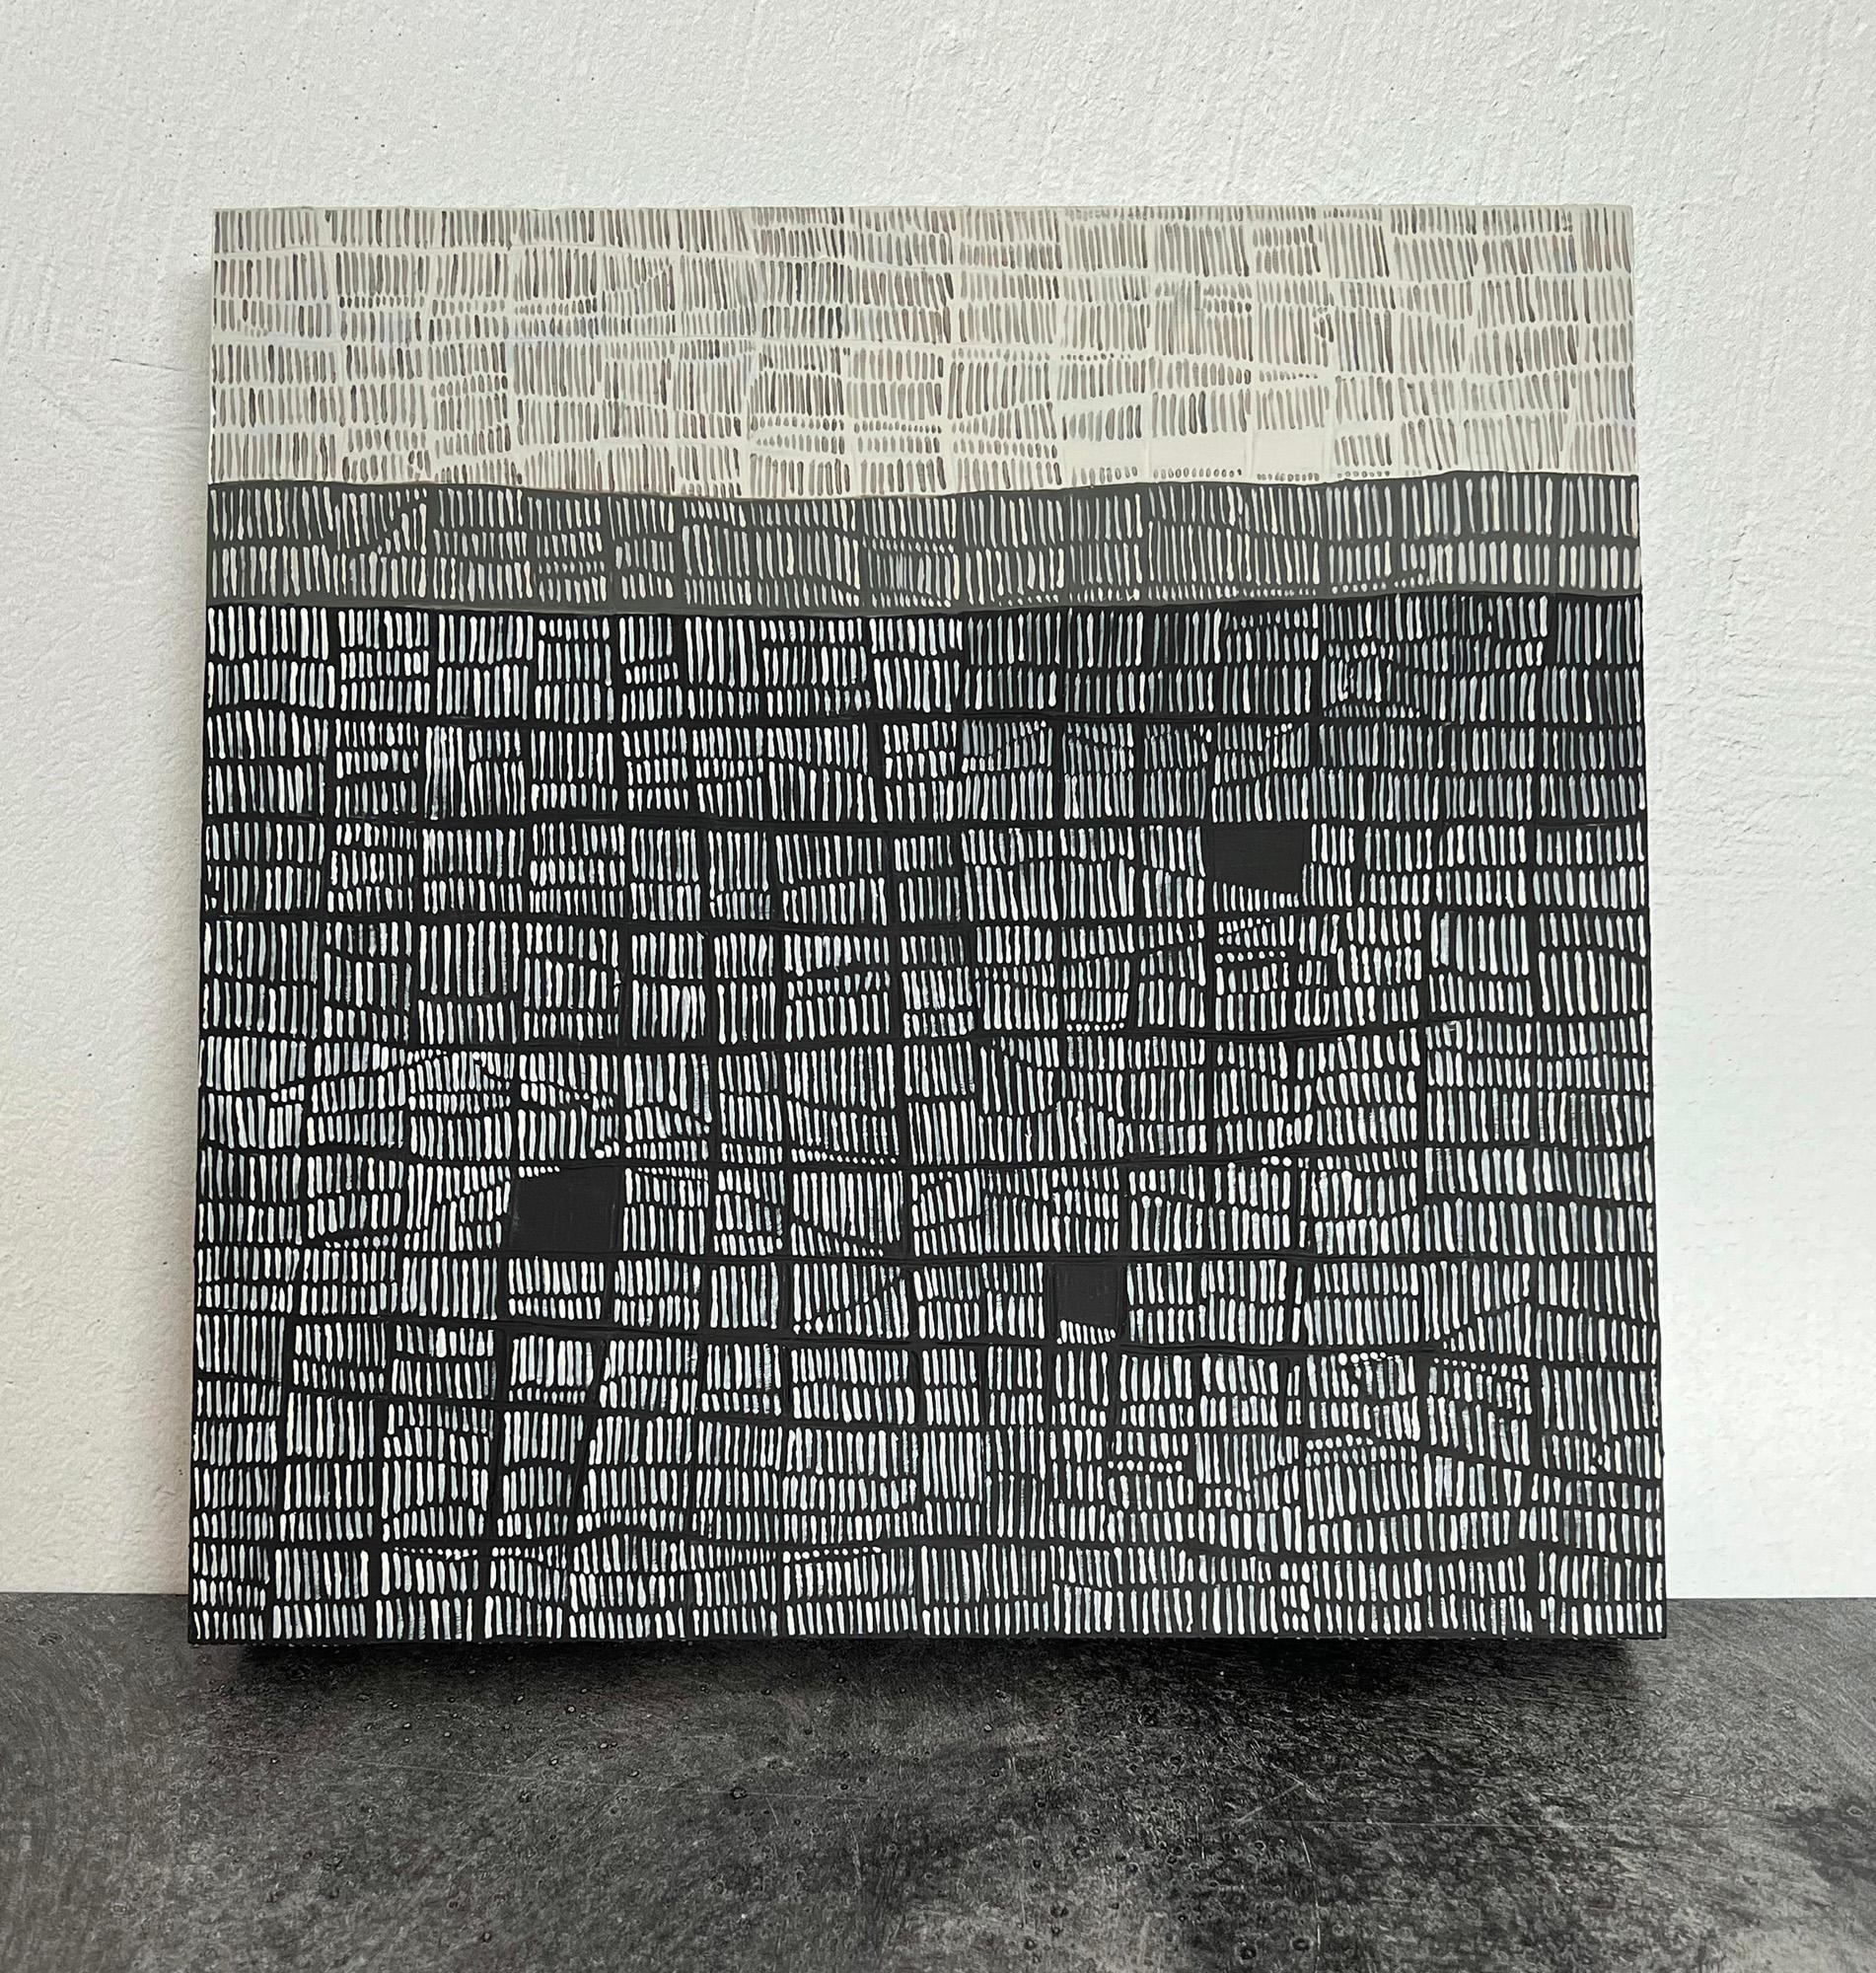 <p>Kommentare der Künstlerin<br>Die Künstlerin Terri Bell hat ein abstraktes Werk geschaffen, das lineare Texturen und Ausgewogenheit betont. Jeder Abschnitt enthält feste Flächen, die sich von den fließenden Linien abheben. Mit einem subtilen